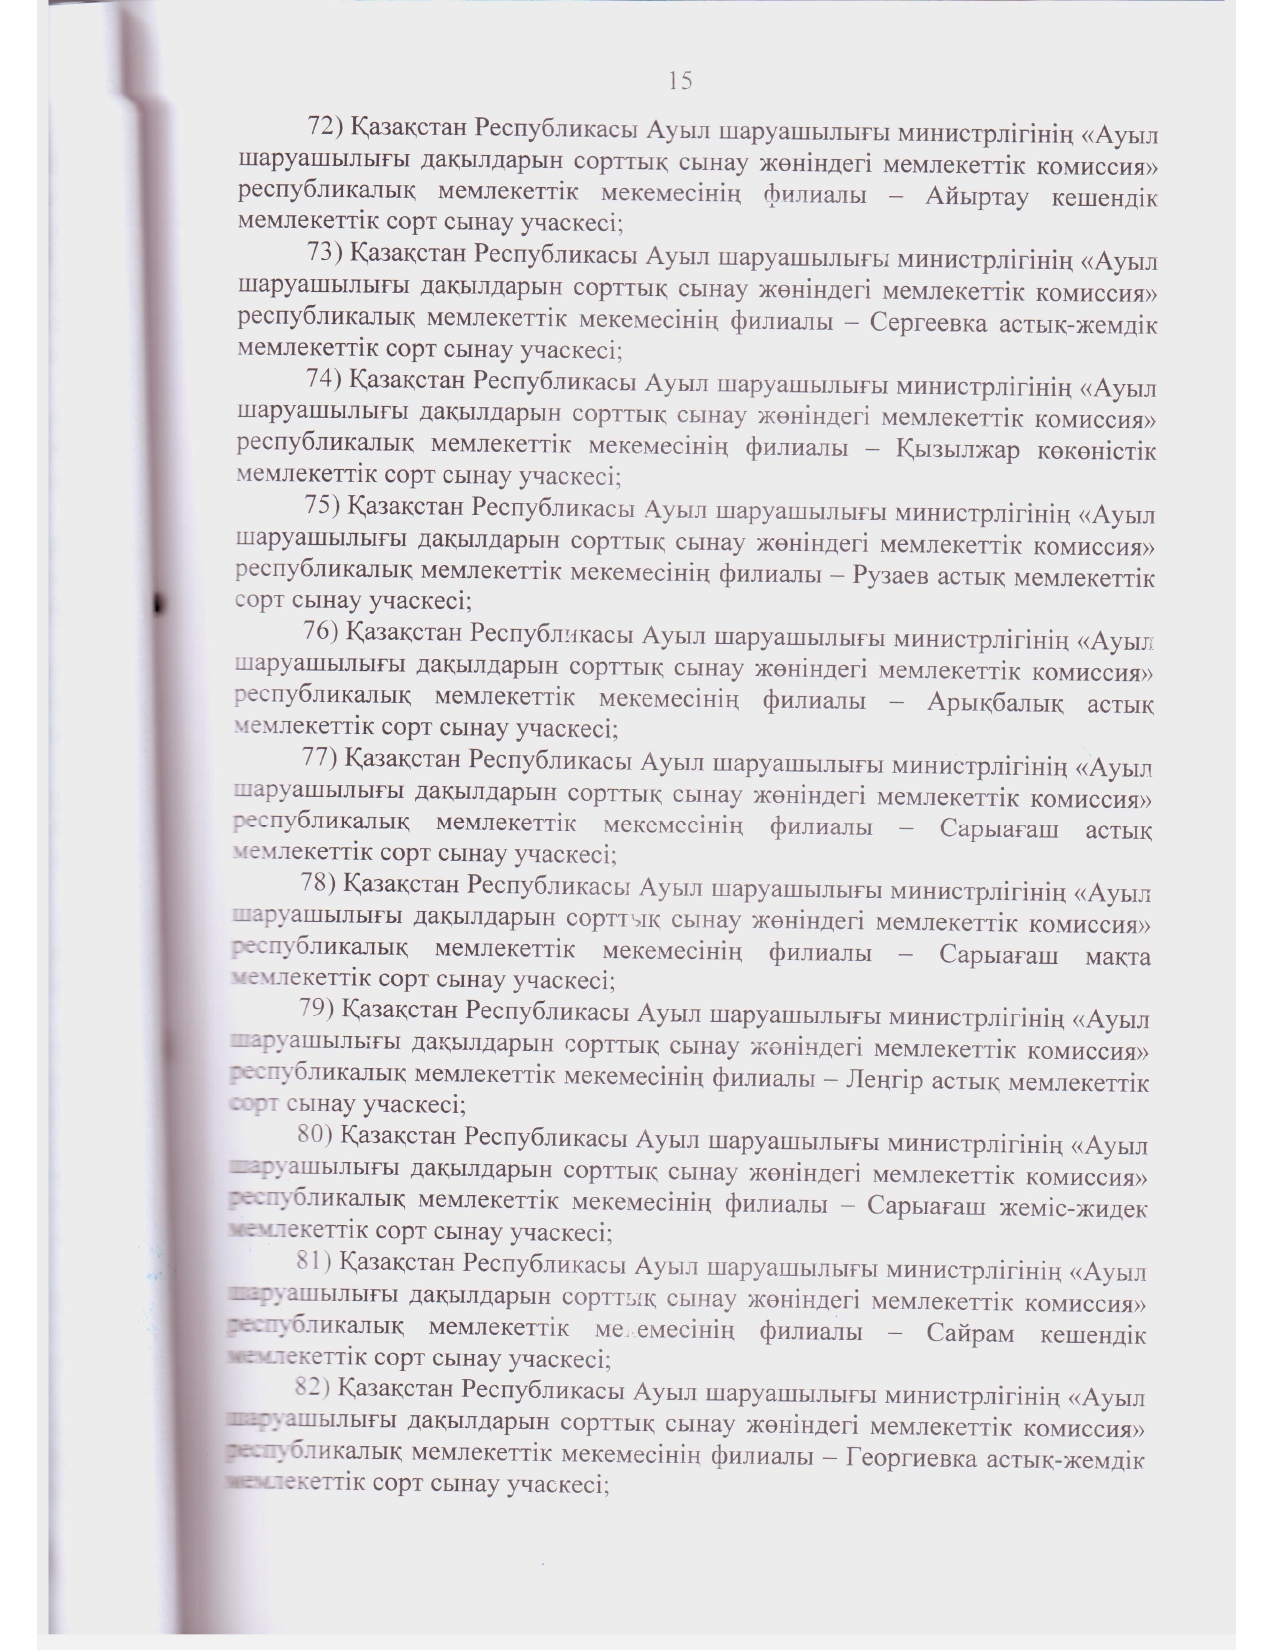 Устав ГосКомиссии_2021 год зарегистрирован_page-0014